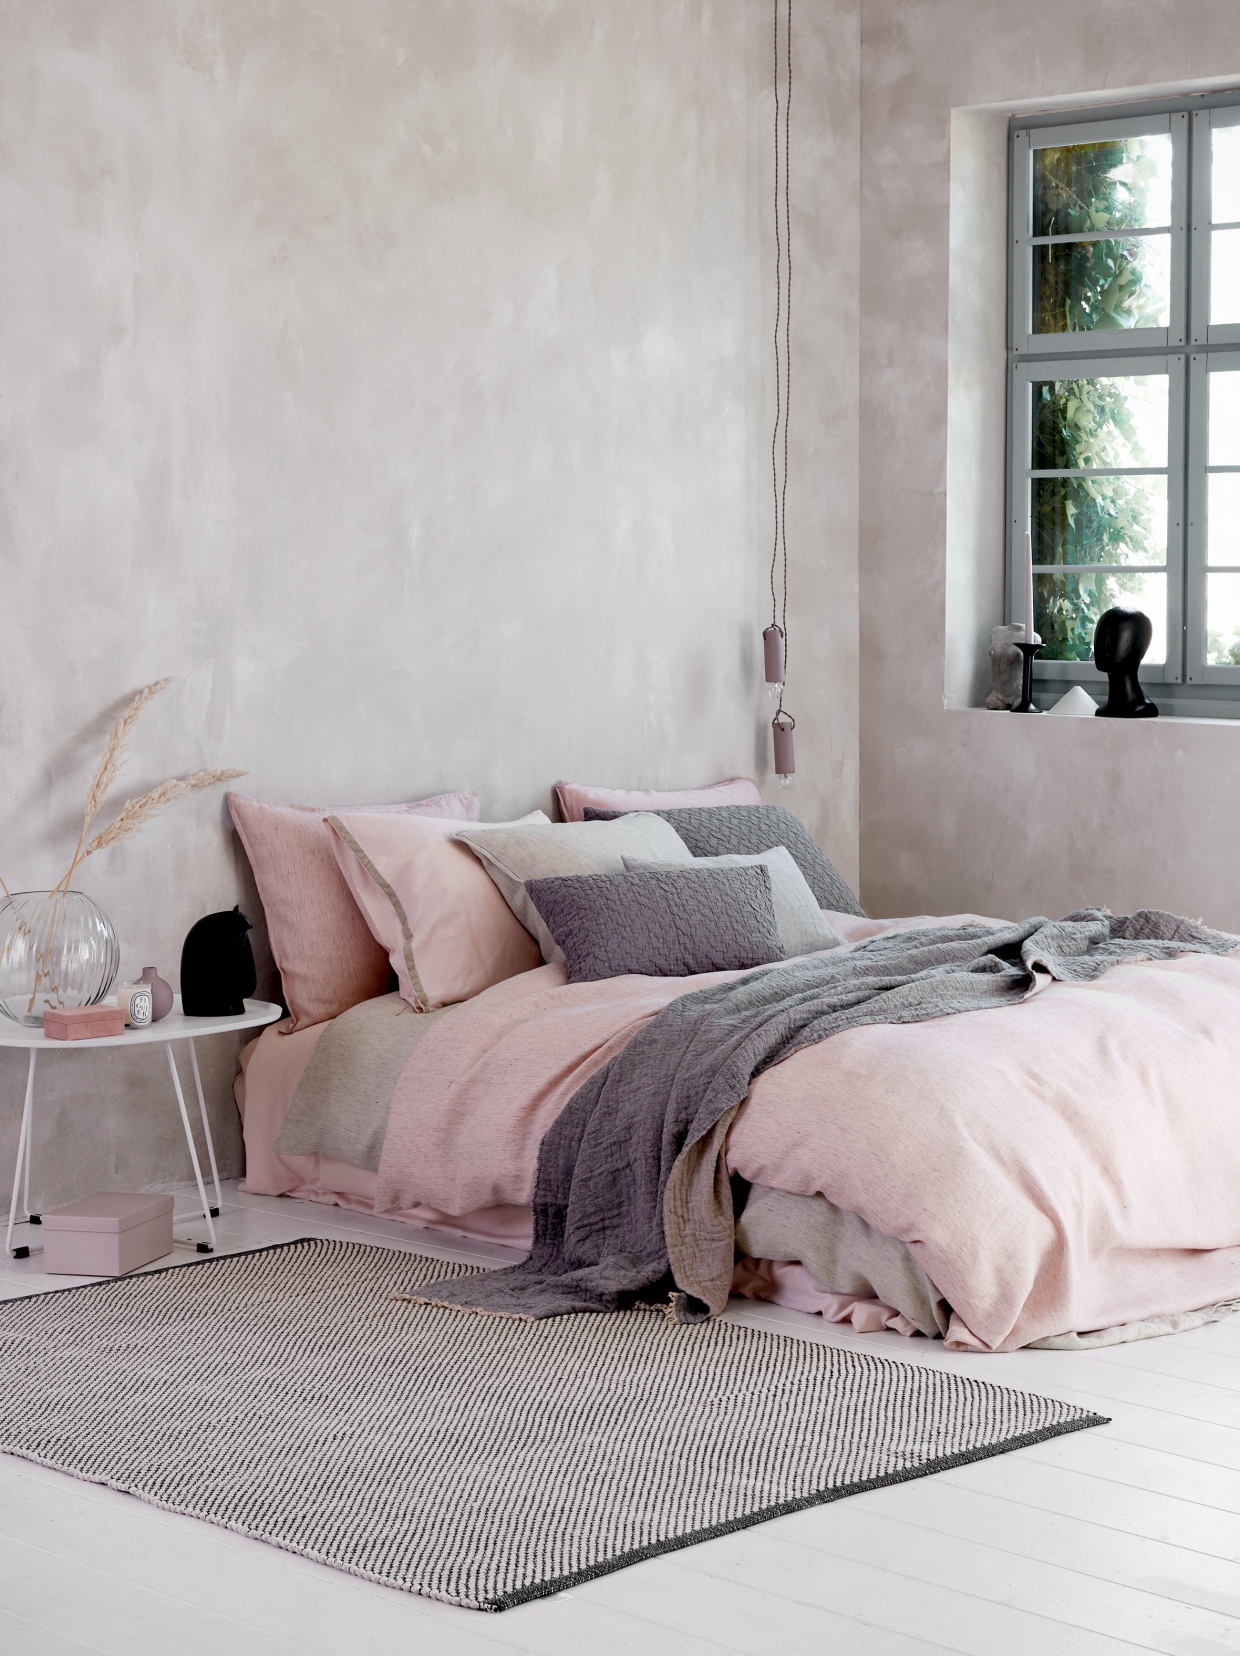 Inspiratie voor een romantische slaapkamer met wit, roze en grijs - ARCHANA.NL #slaapkamers #bedrooms